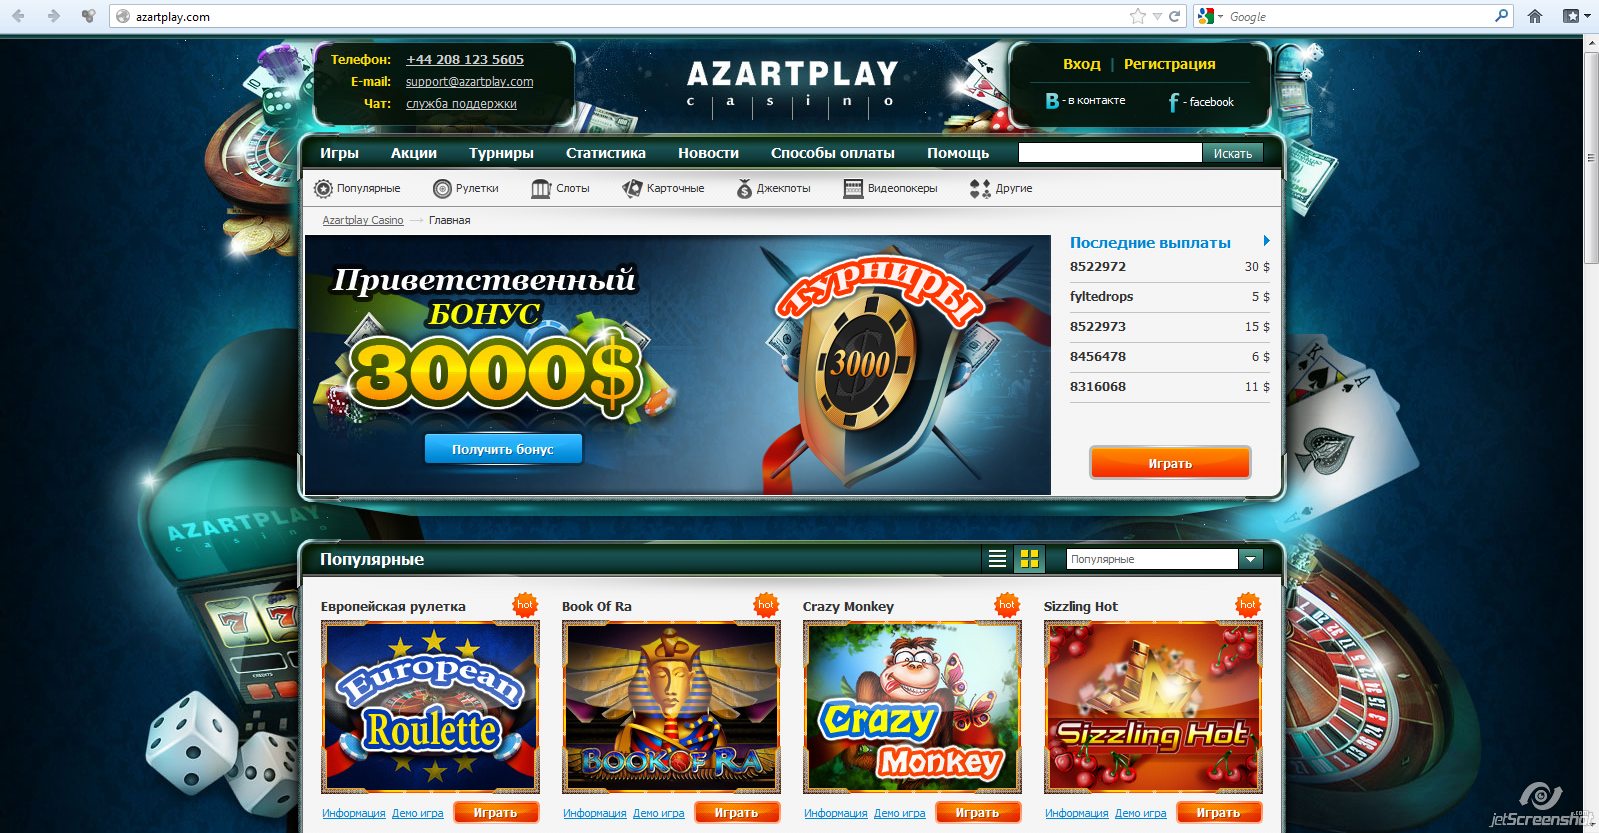 Казино AzartPlay - официальный сайт, играть онлайн бесплатно в слоты и автоматы, скачать клиент